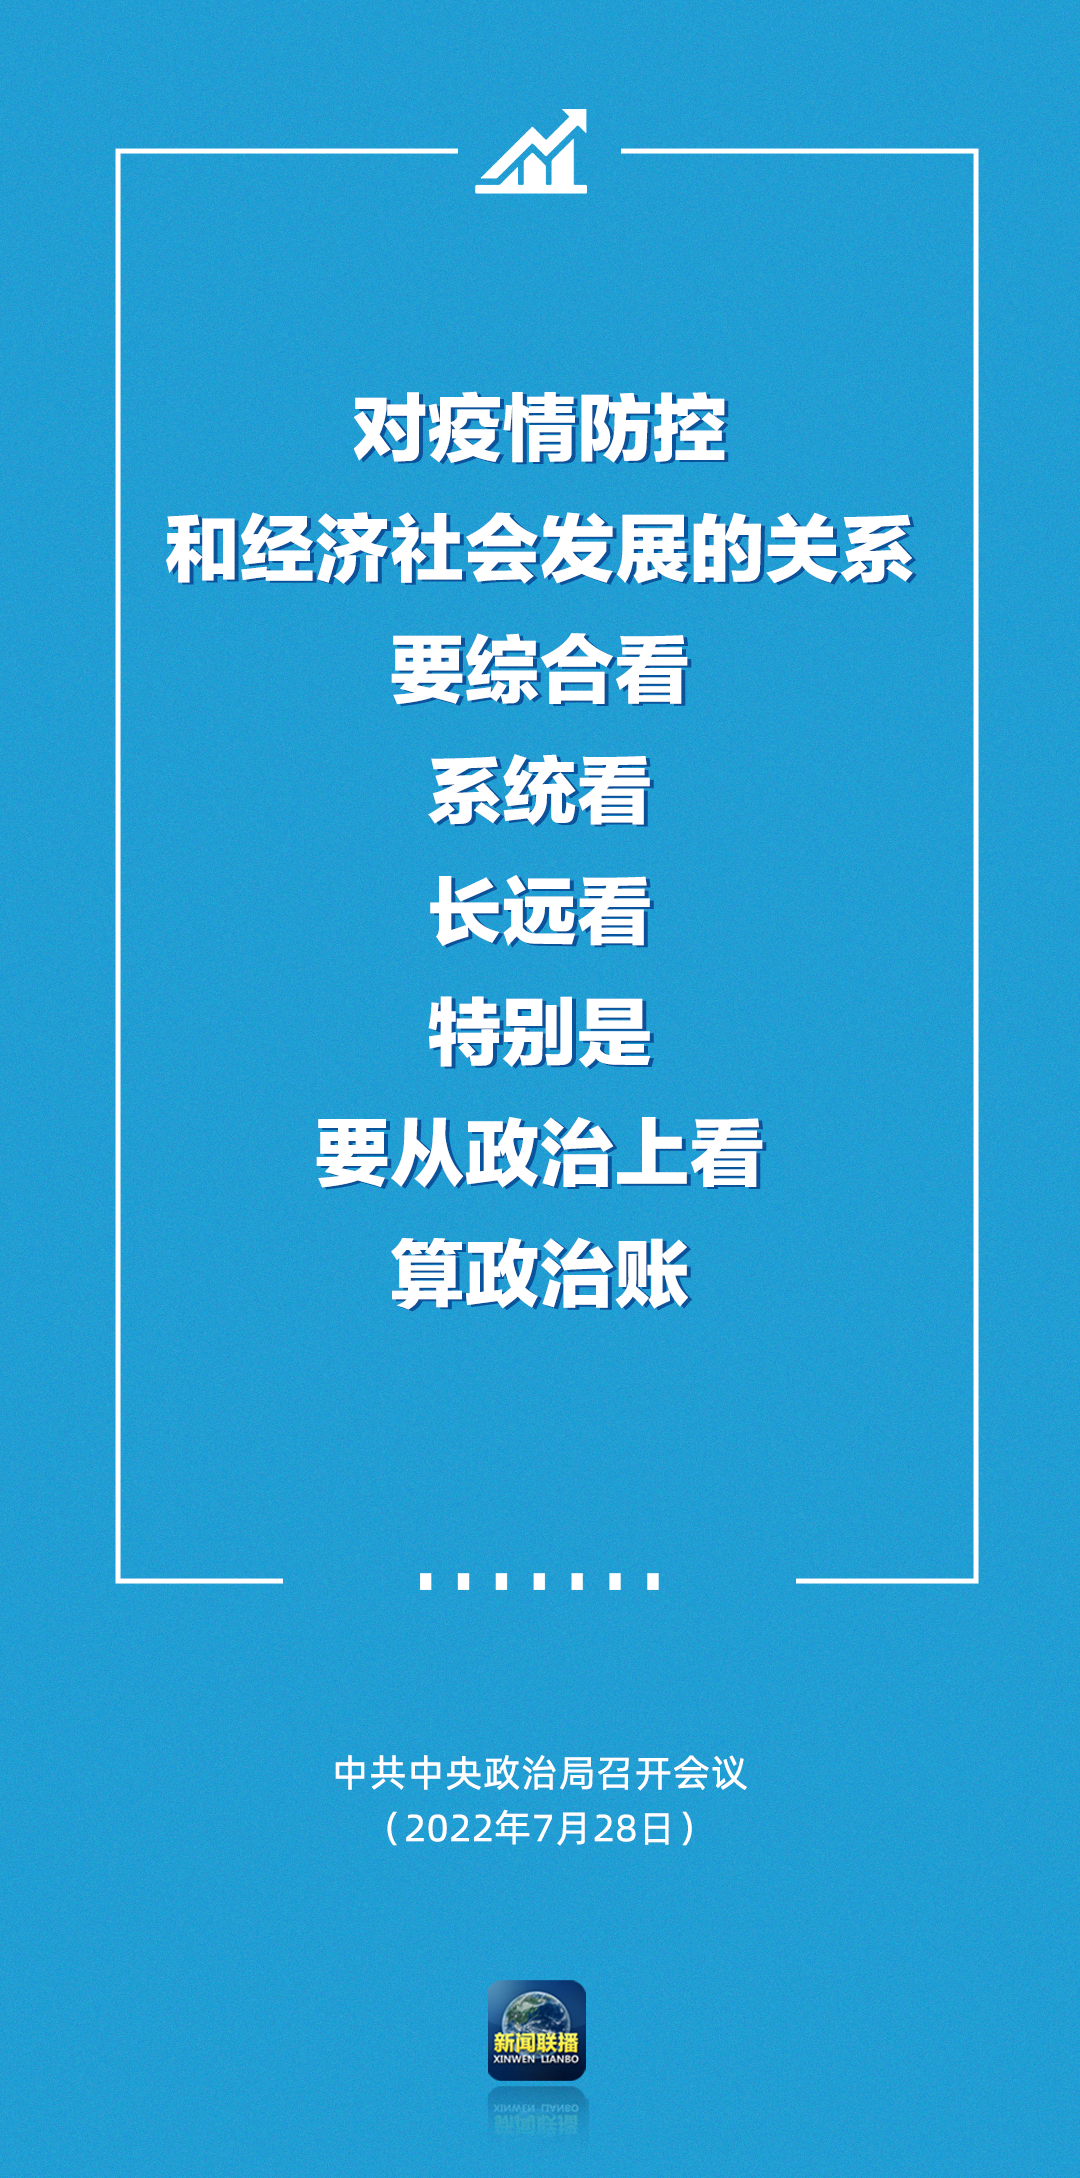 中国气象局党组成员、副局长张祖强